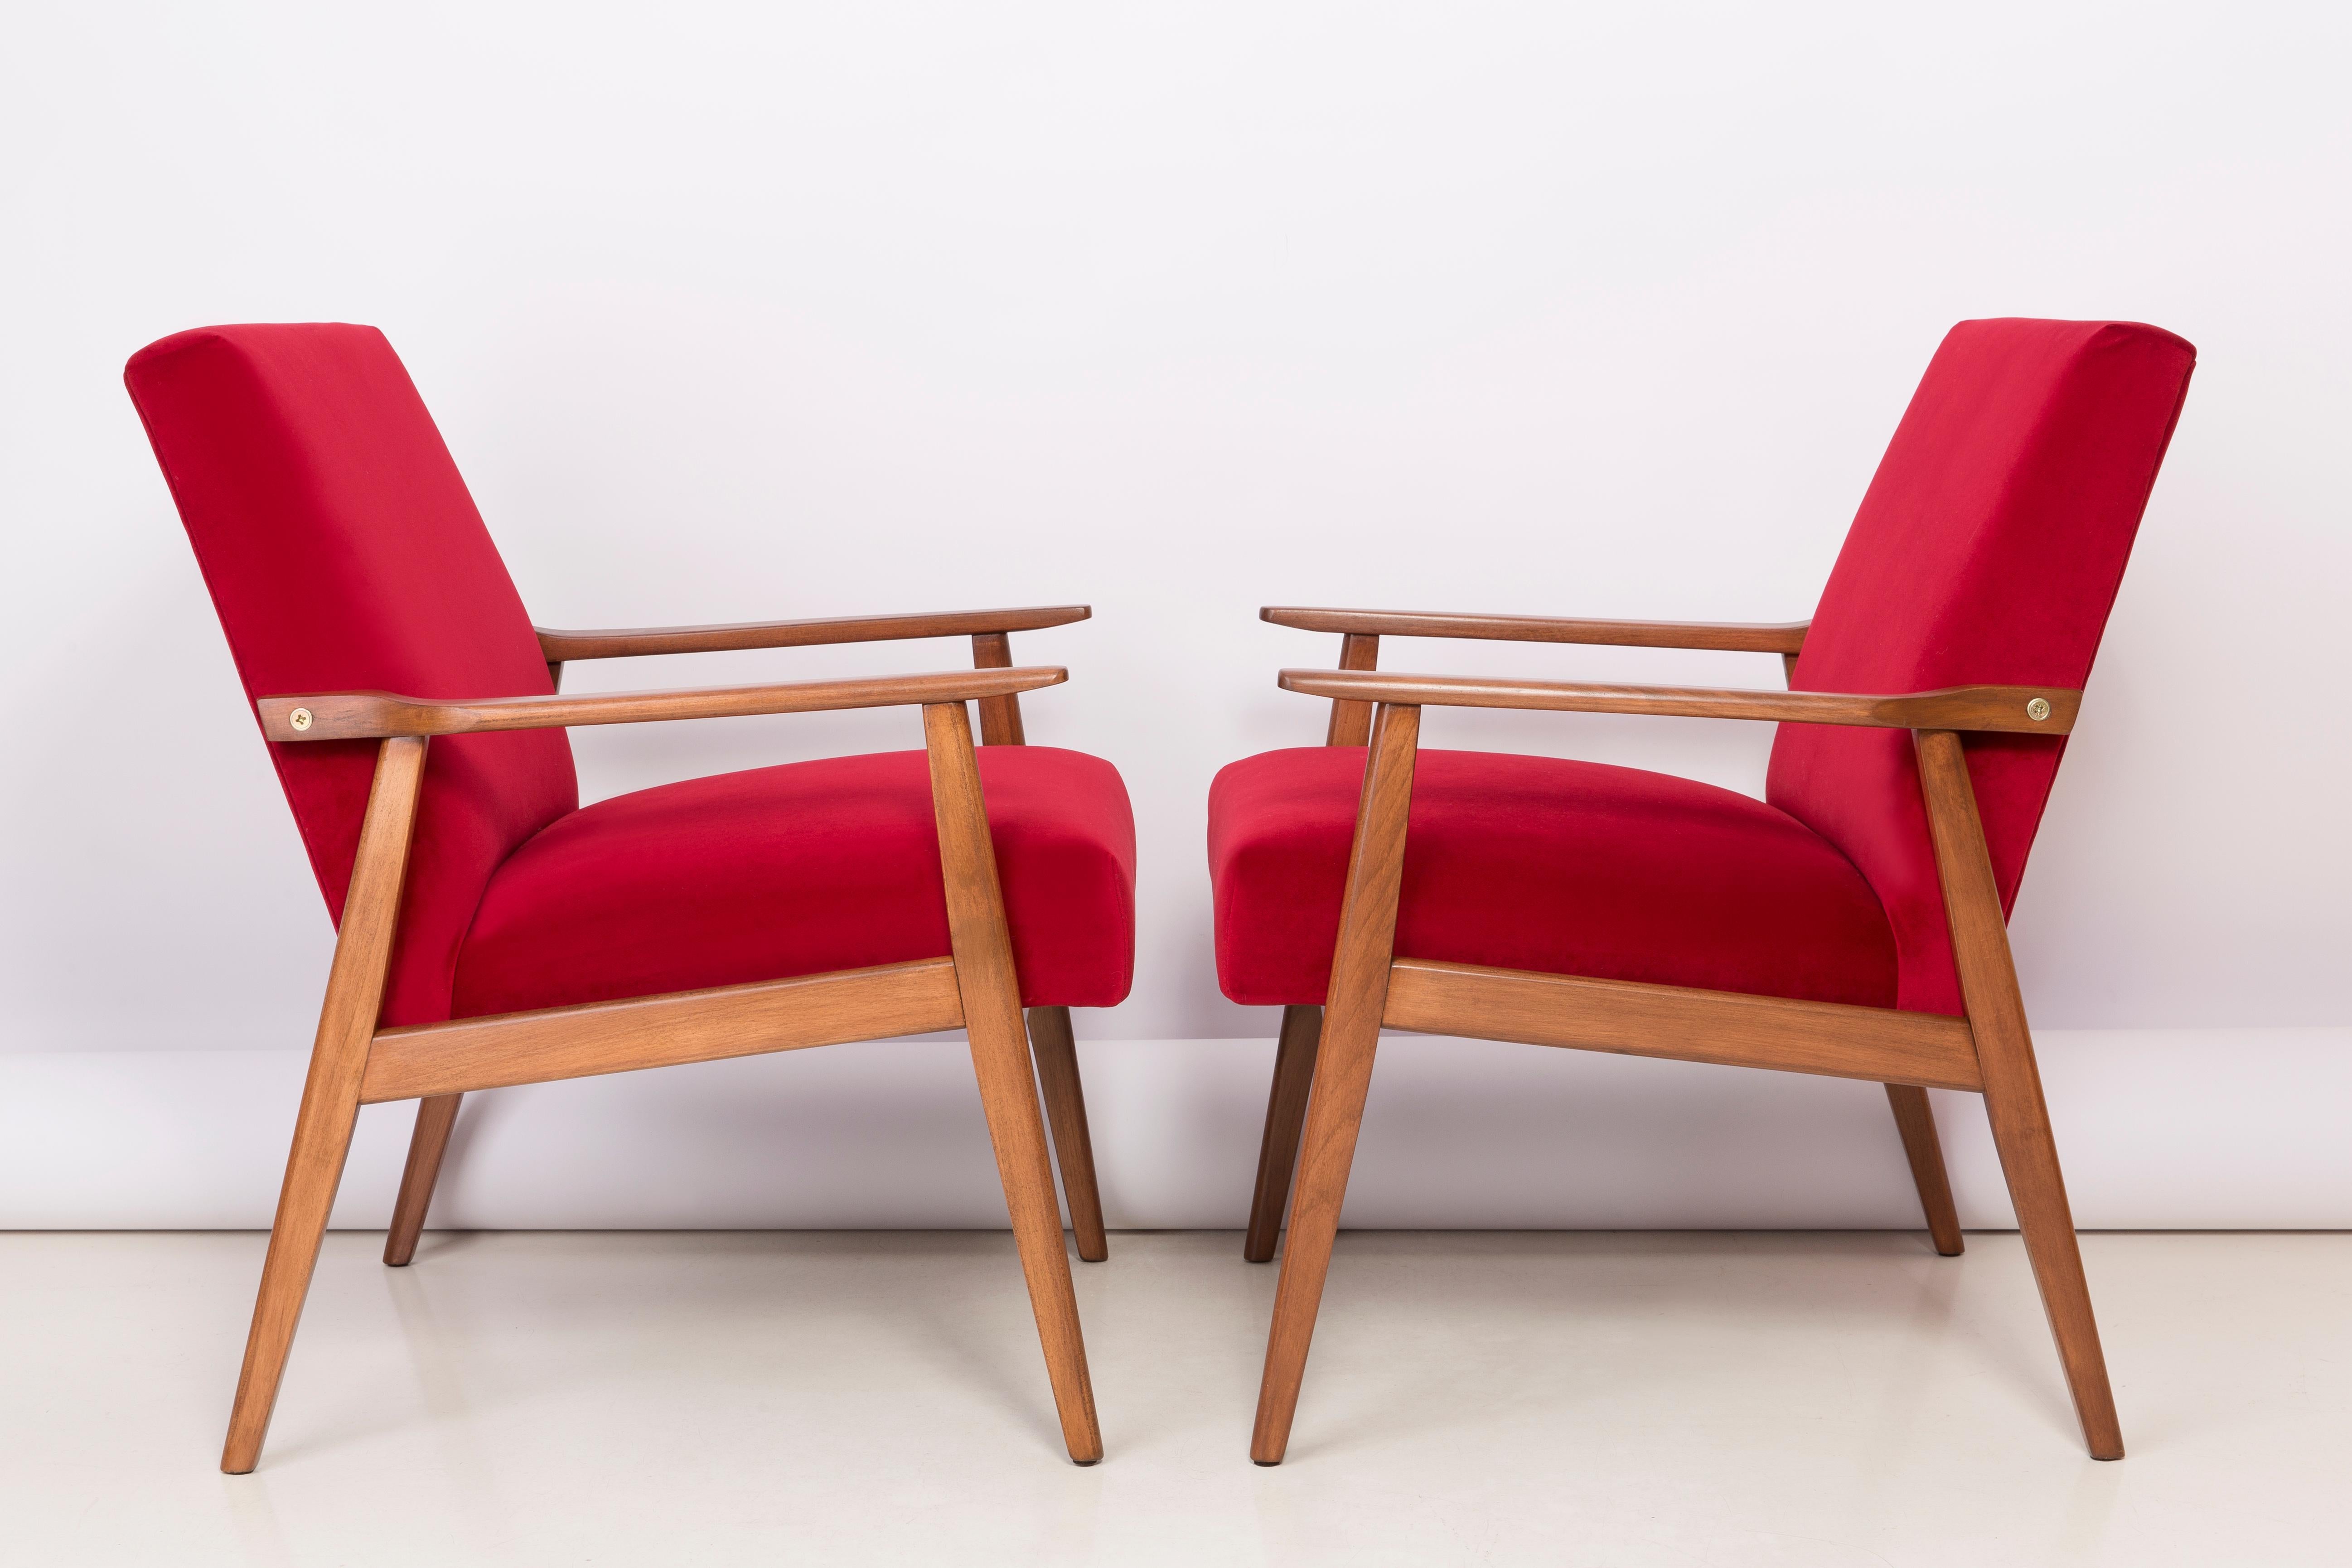 Un beau fauteuil restauré, conçu par Henryk Lis. Meubles après une rénovation complète de la menuiserie et de la tapisserie. Le tissu, qui est recouvert d'un dossier et d'une assise, est un revêtement en velours rouge de haute qualité (couleur